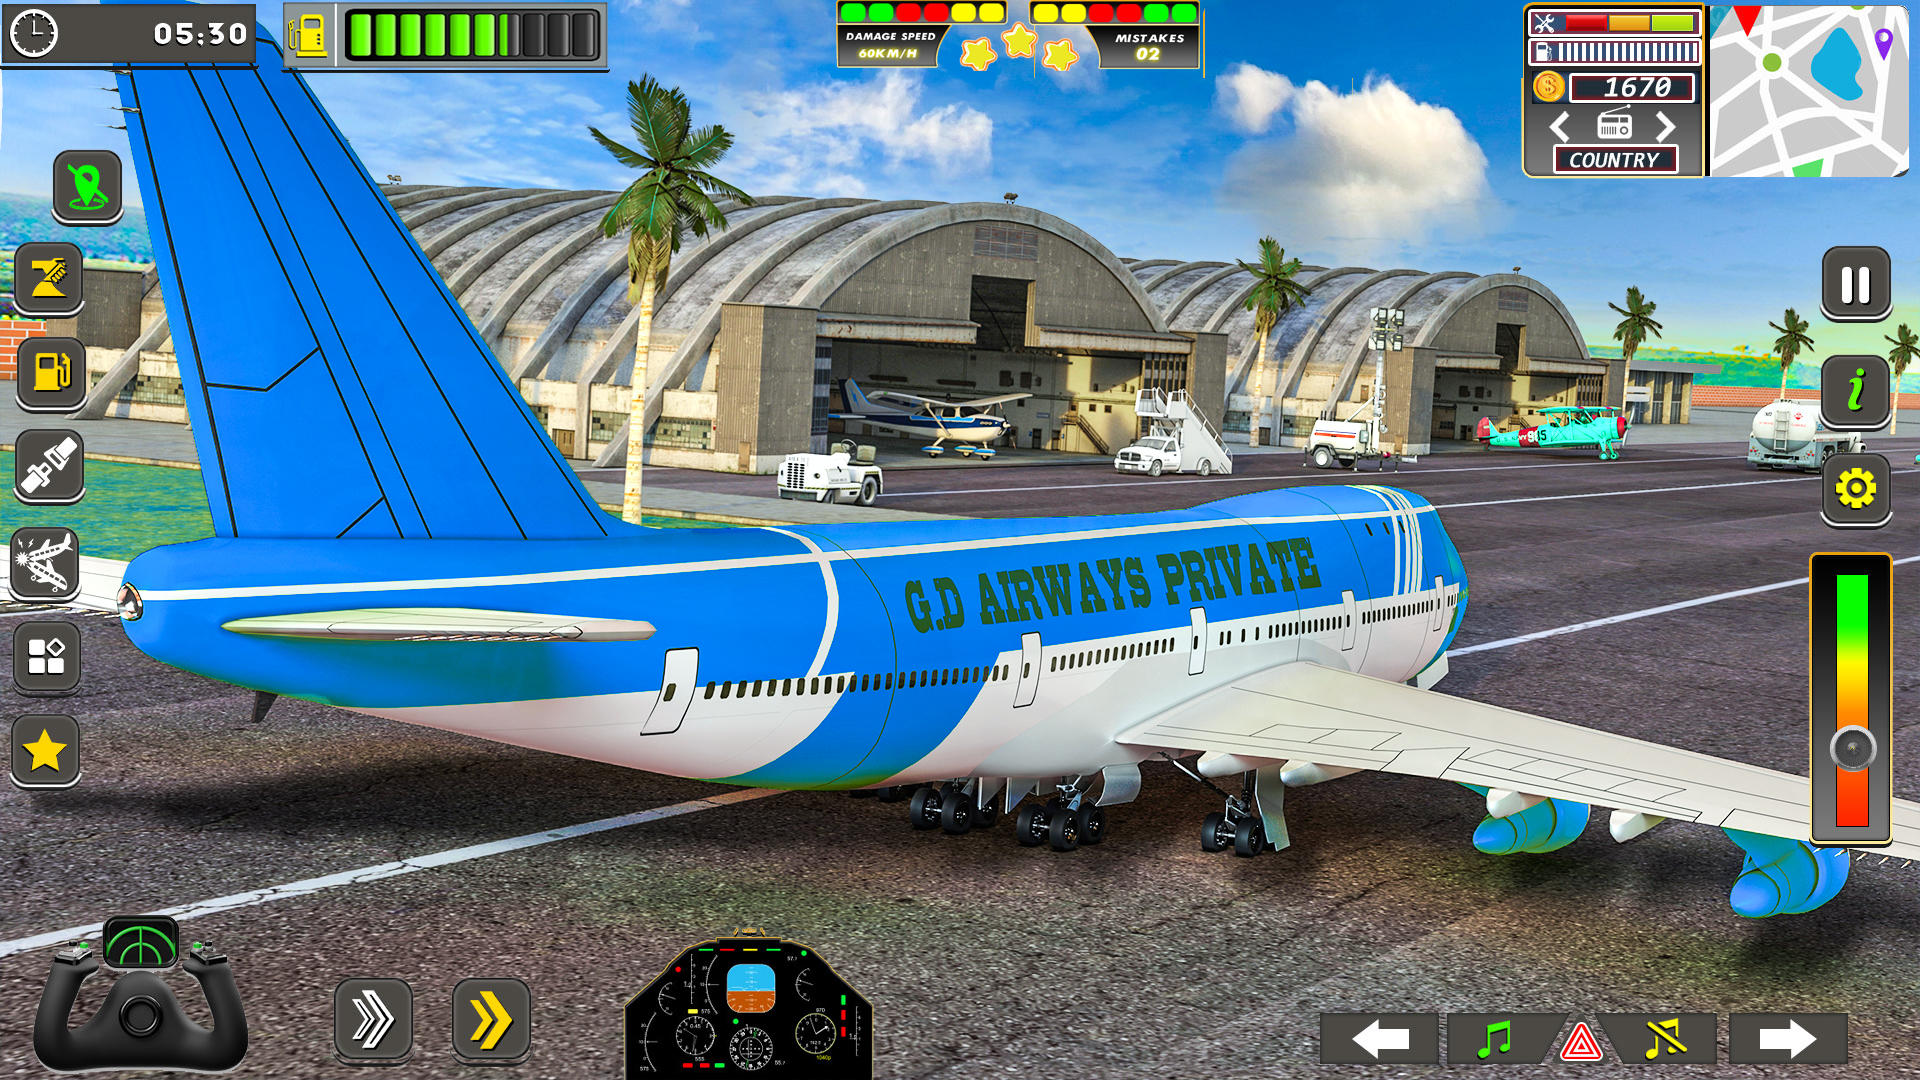 Screenshot 1 of jogo de avião piloto da cidade 0.28